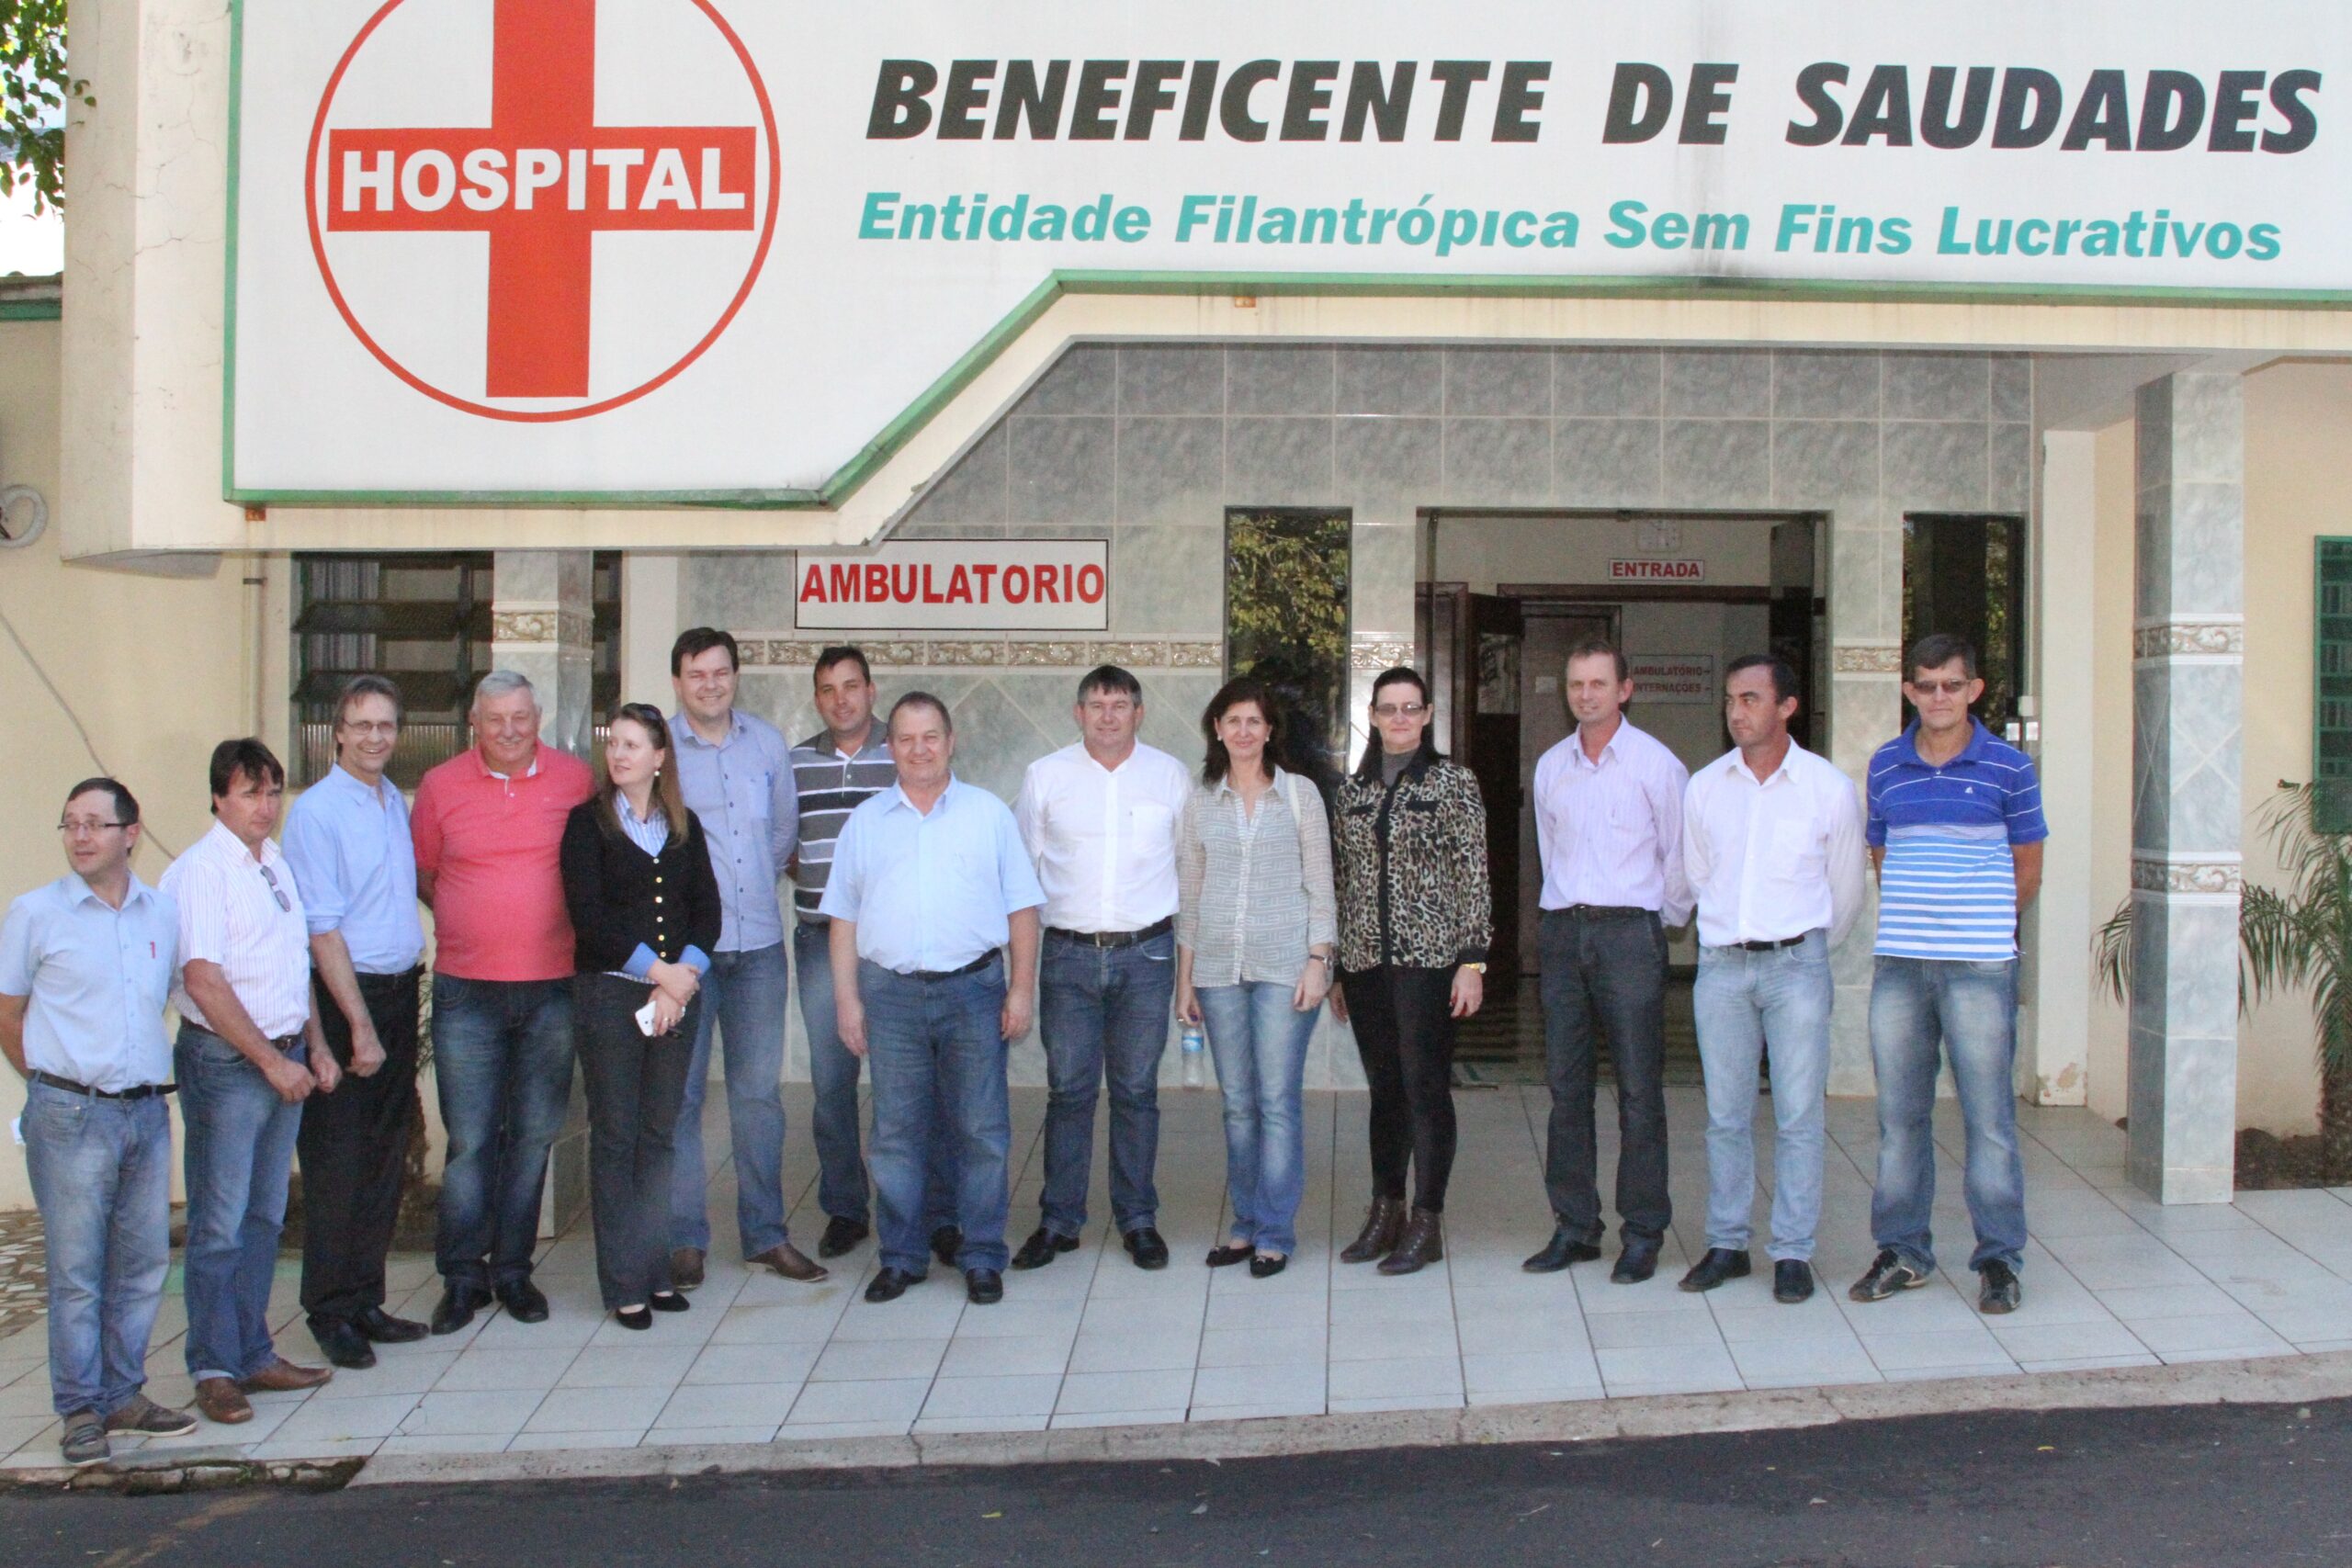 Deputado Federal Pedro Uczai esteve em 2014 visitando o Hospital Saudades, onde lideranças apresentaram as principais demandas da entidade